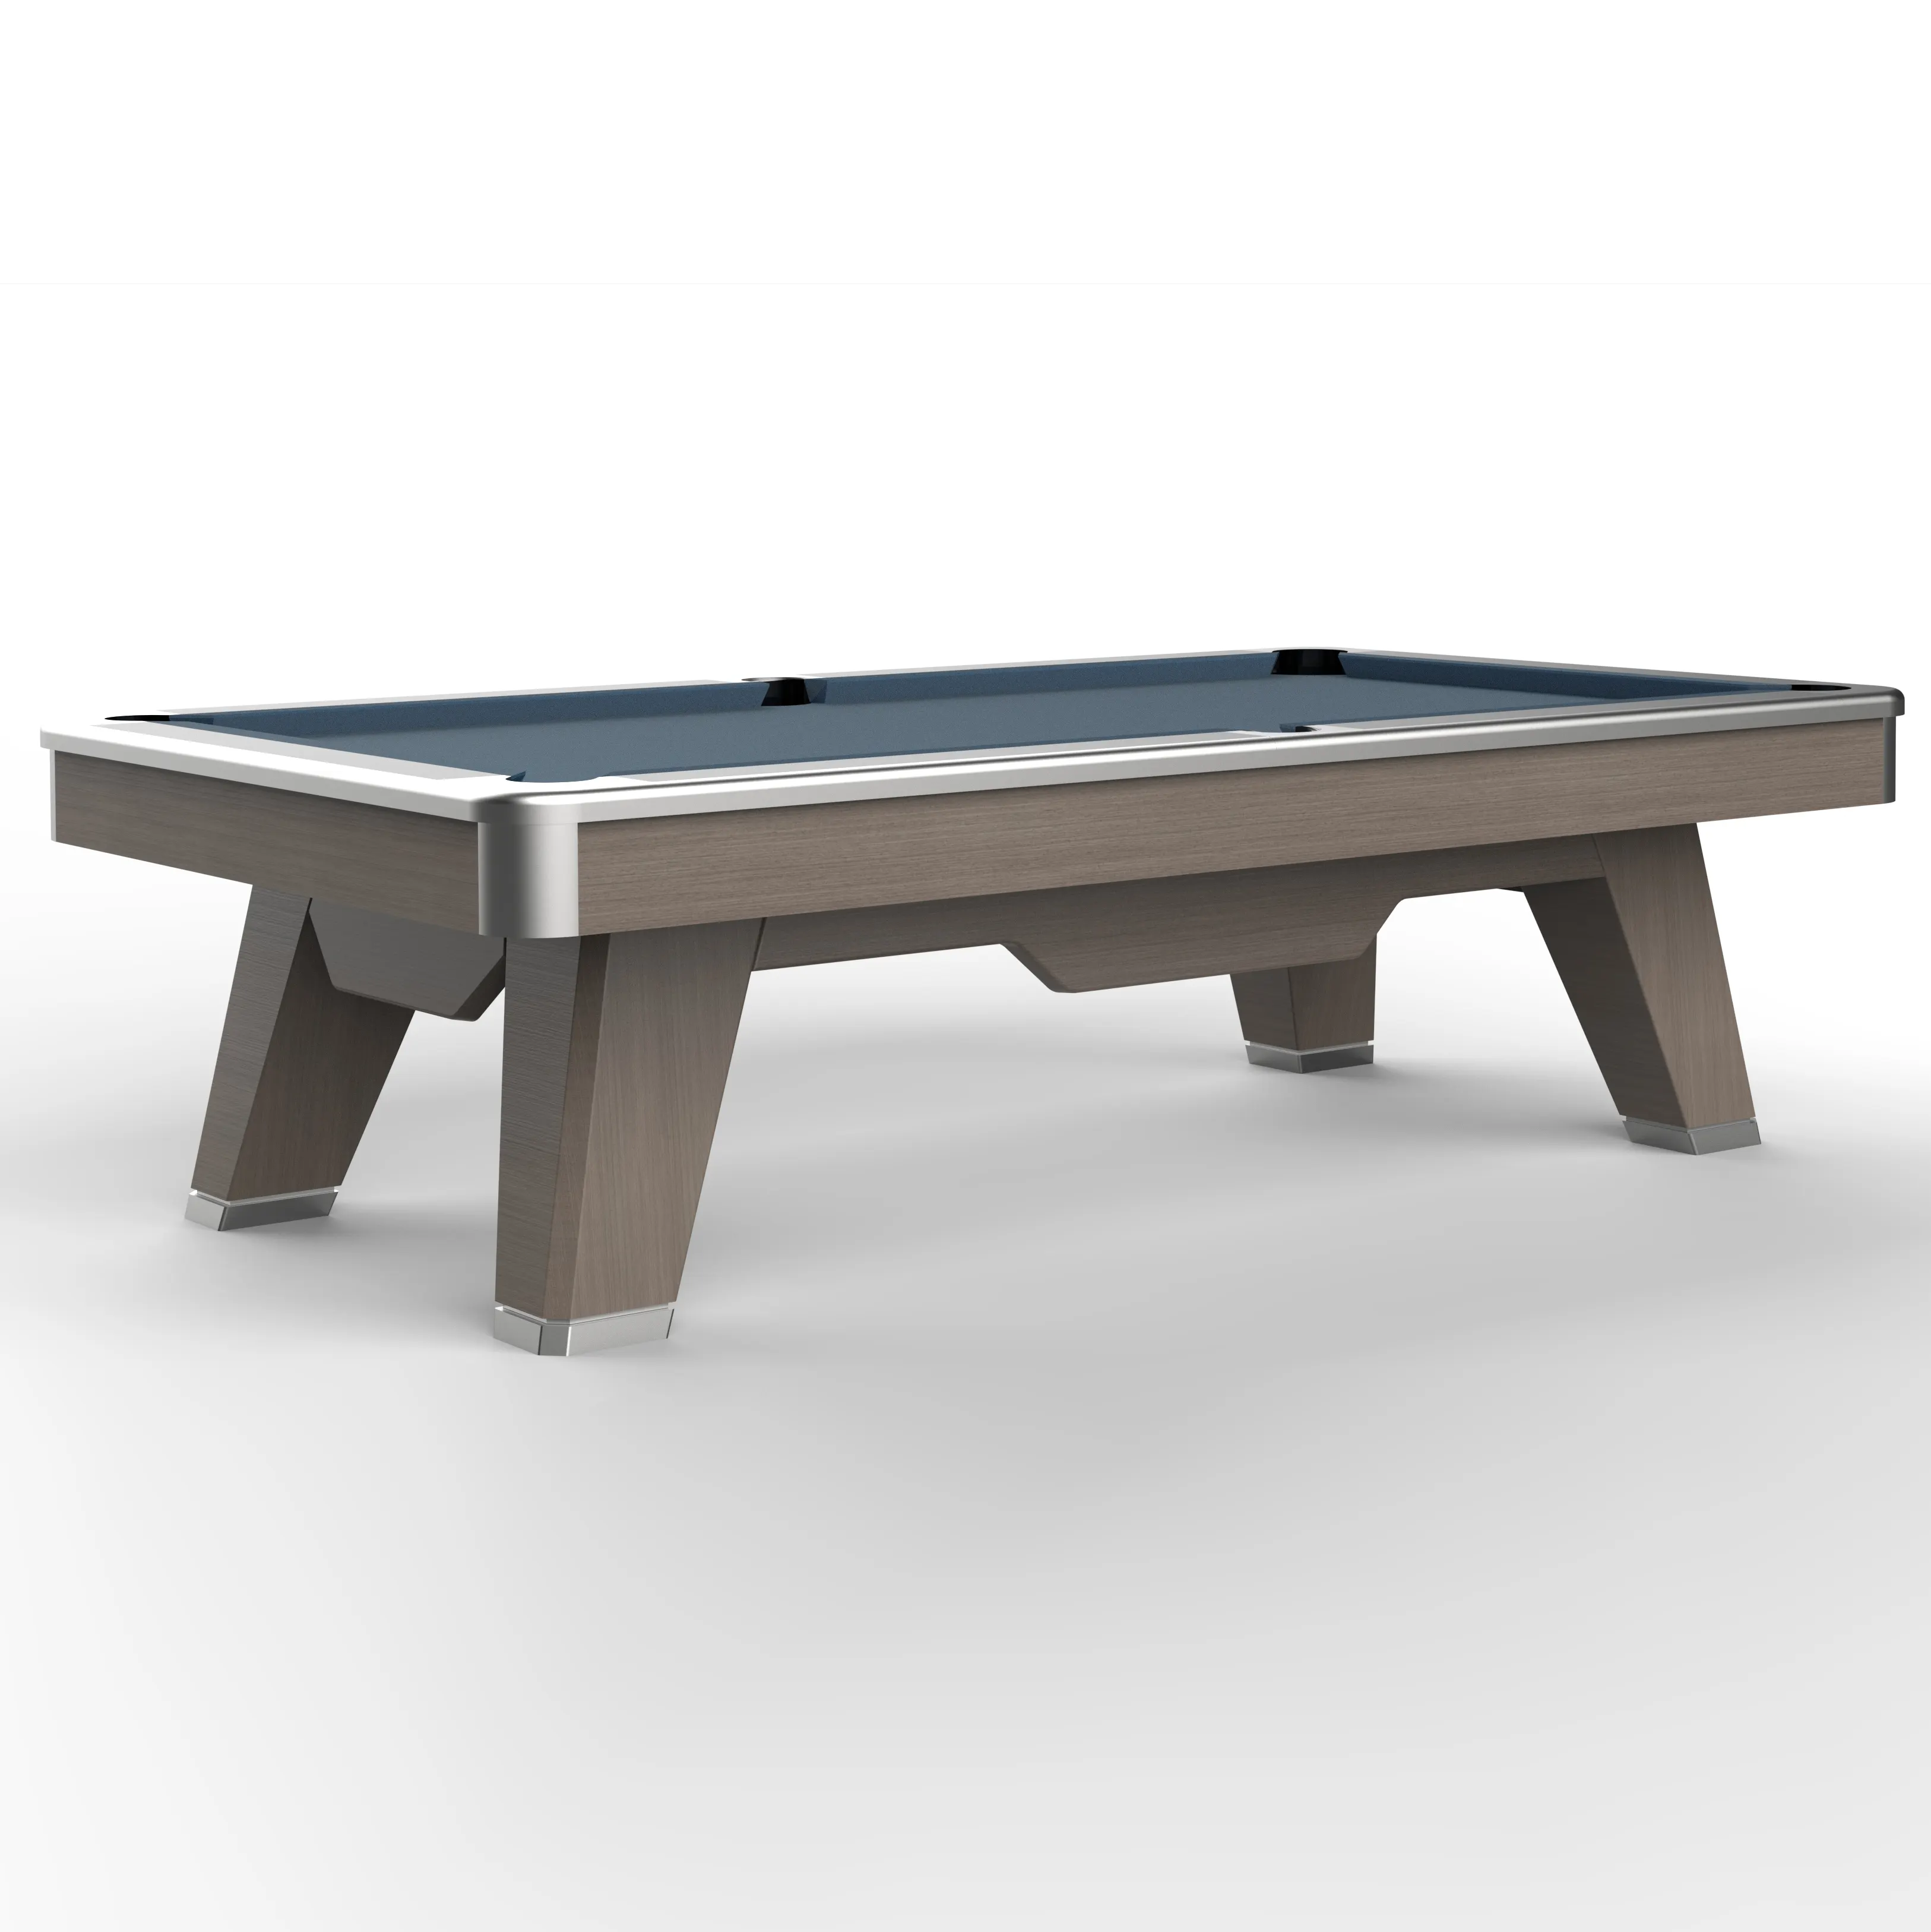 Equipo deportivo de alta calidad, mesas de billar Unisex, mesa de juego deportiva de Interior de madera maciza, mesa de billar de 9 pies y 8 pies a la venta